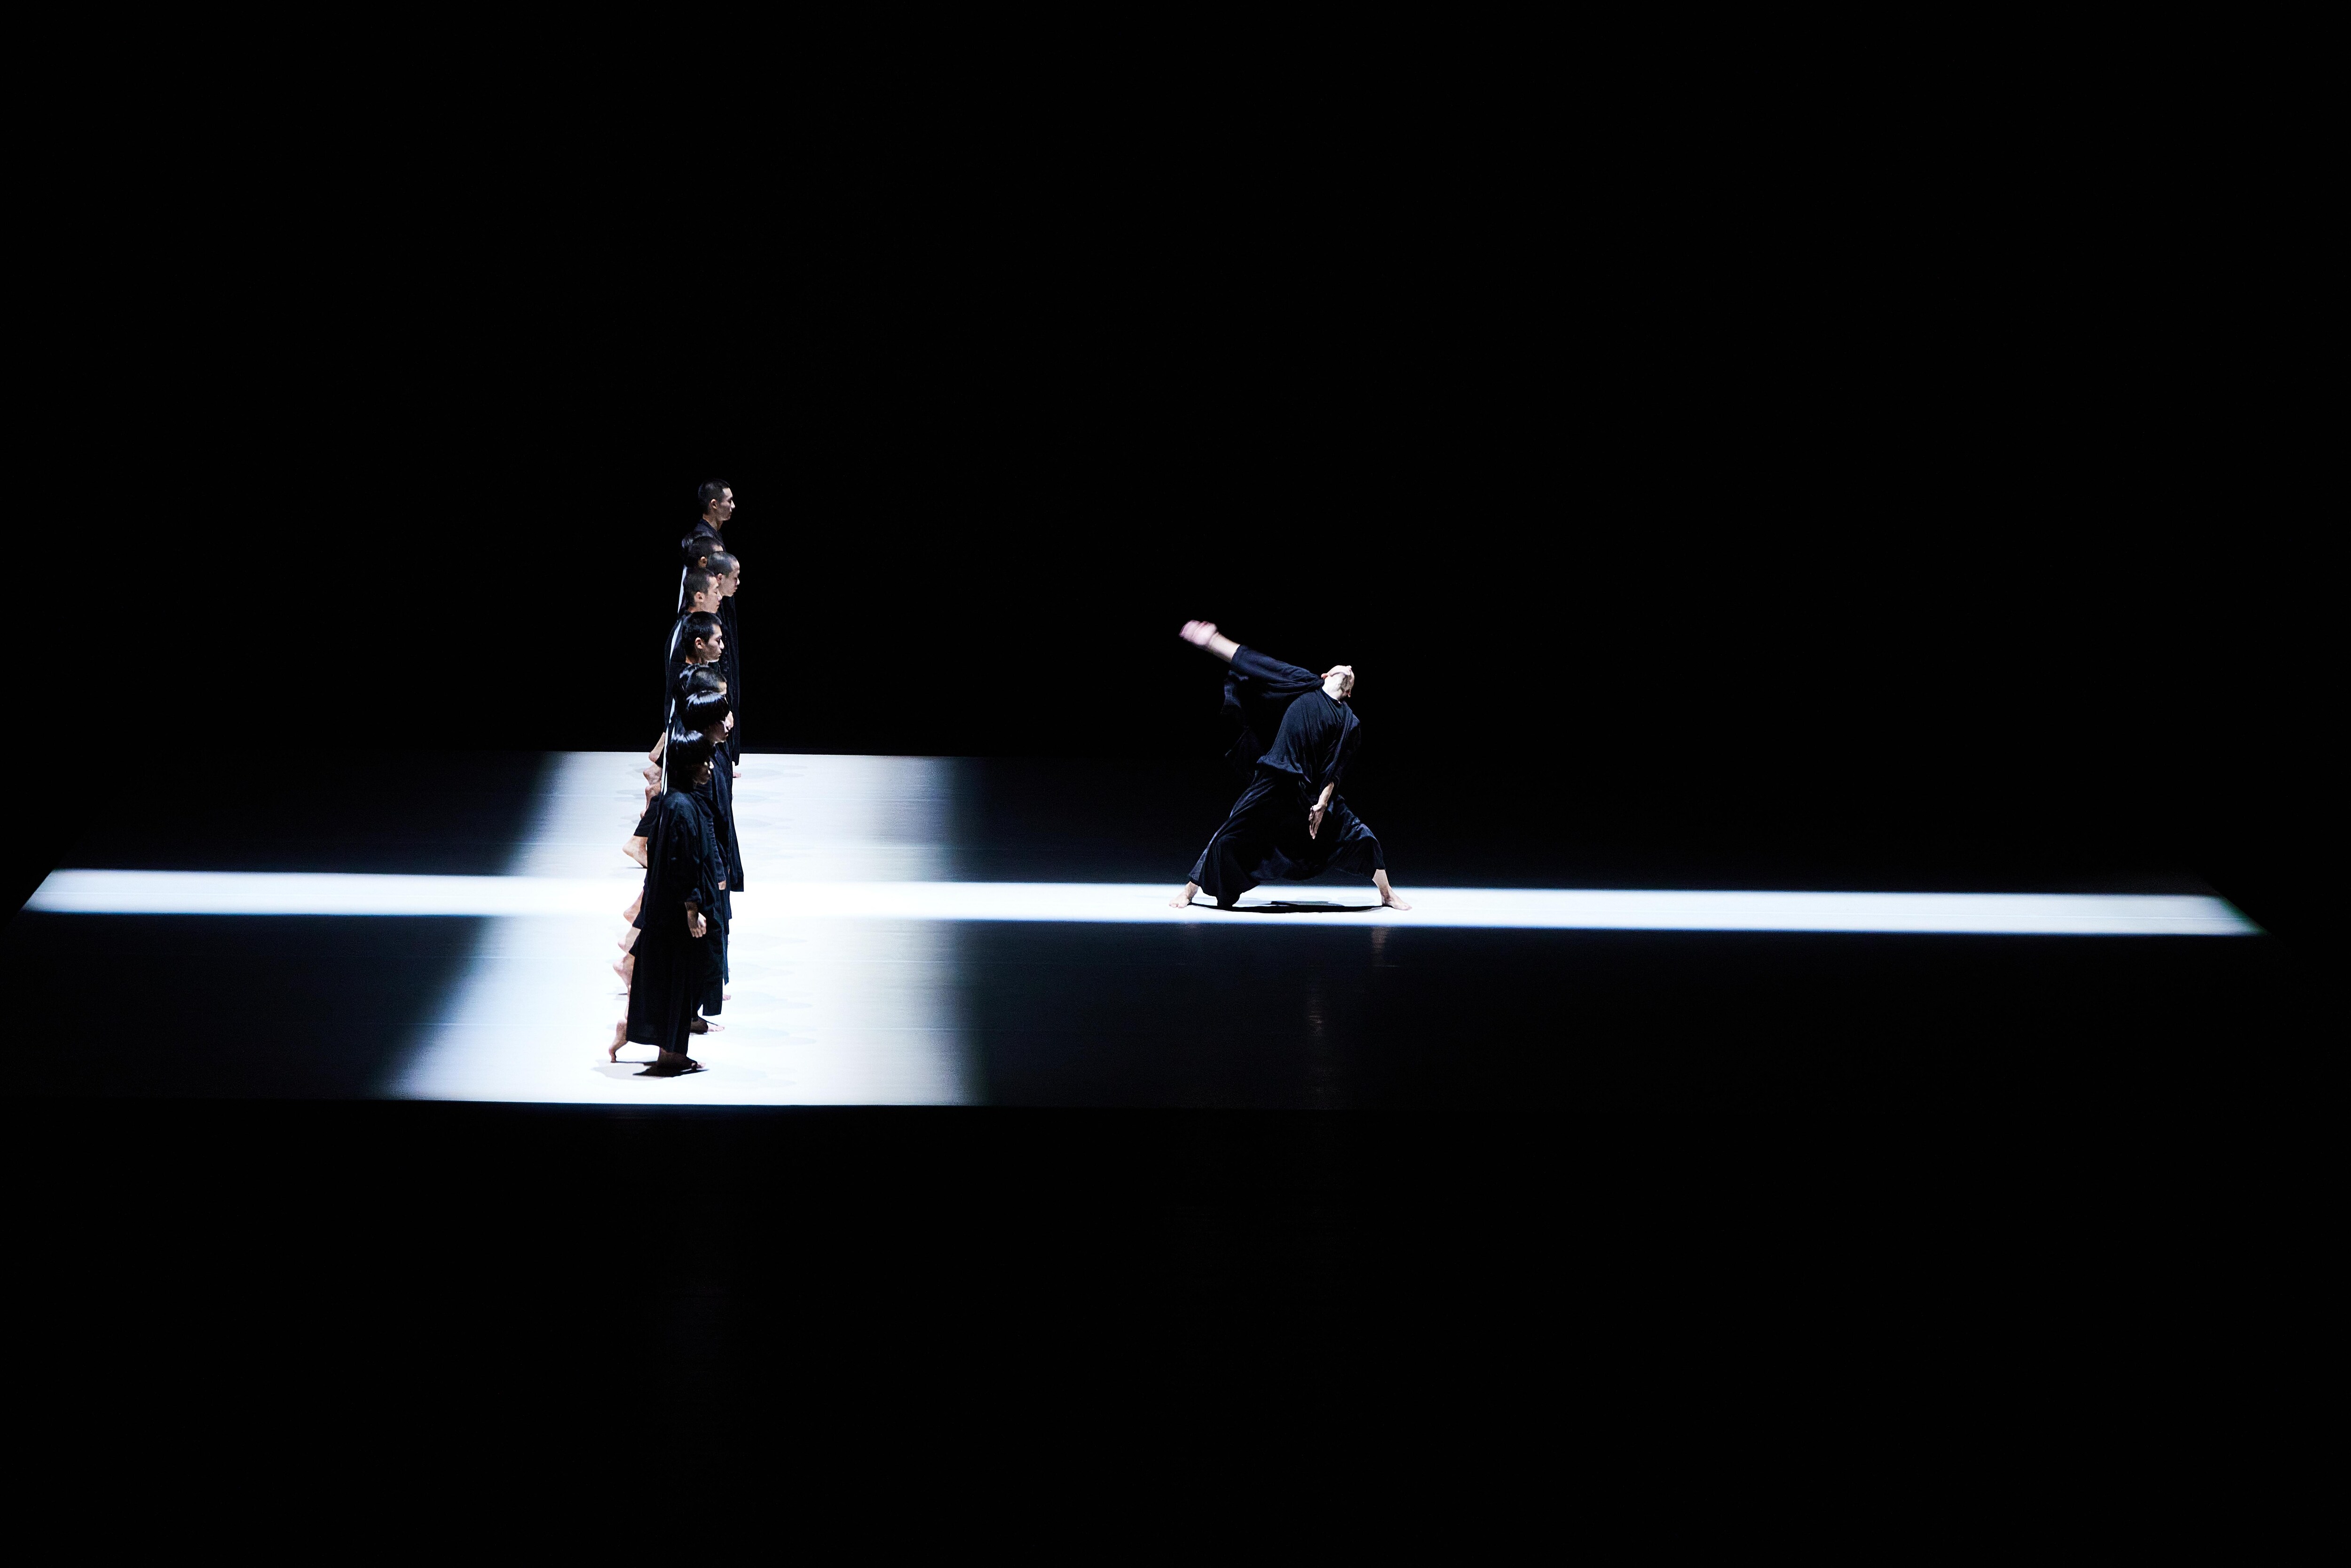 danseurs alignés sur un passage de lumière blanche, faisant face à un autre danseur, seul sur une ligne de lumière perpendiculaire.